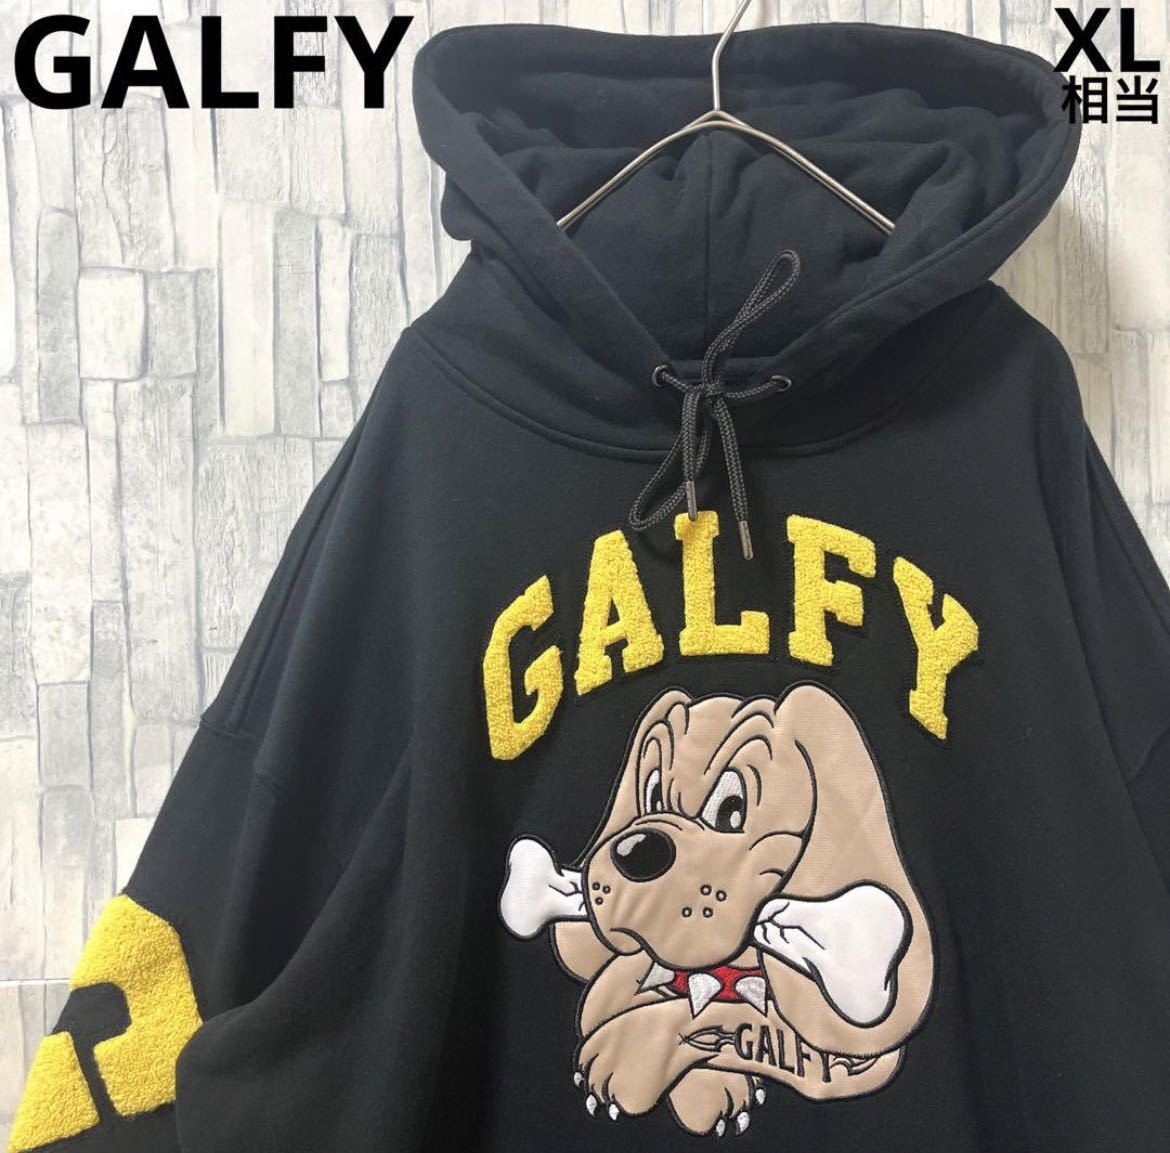 GALFY ガルフィー パーカー スウェット XL ブラック 長袖 デカロゴ ビッグロゴ 刺繍ロゴ パイルロゴ ワッペン プルオーバー フーディ